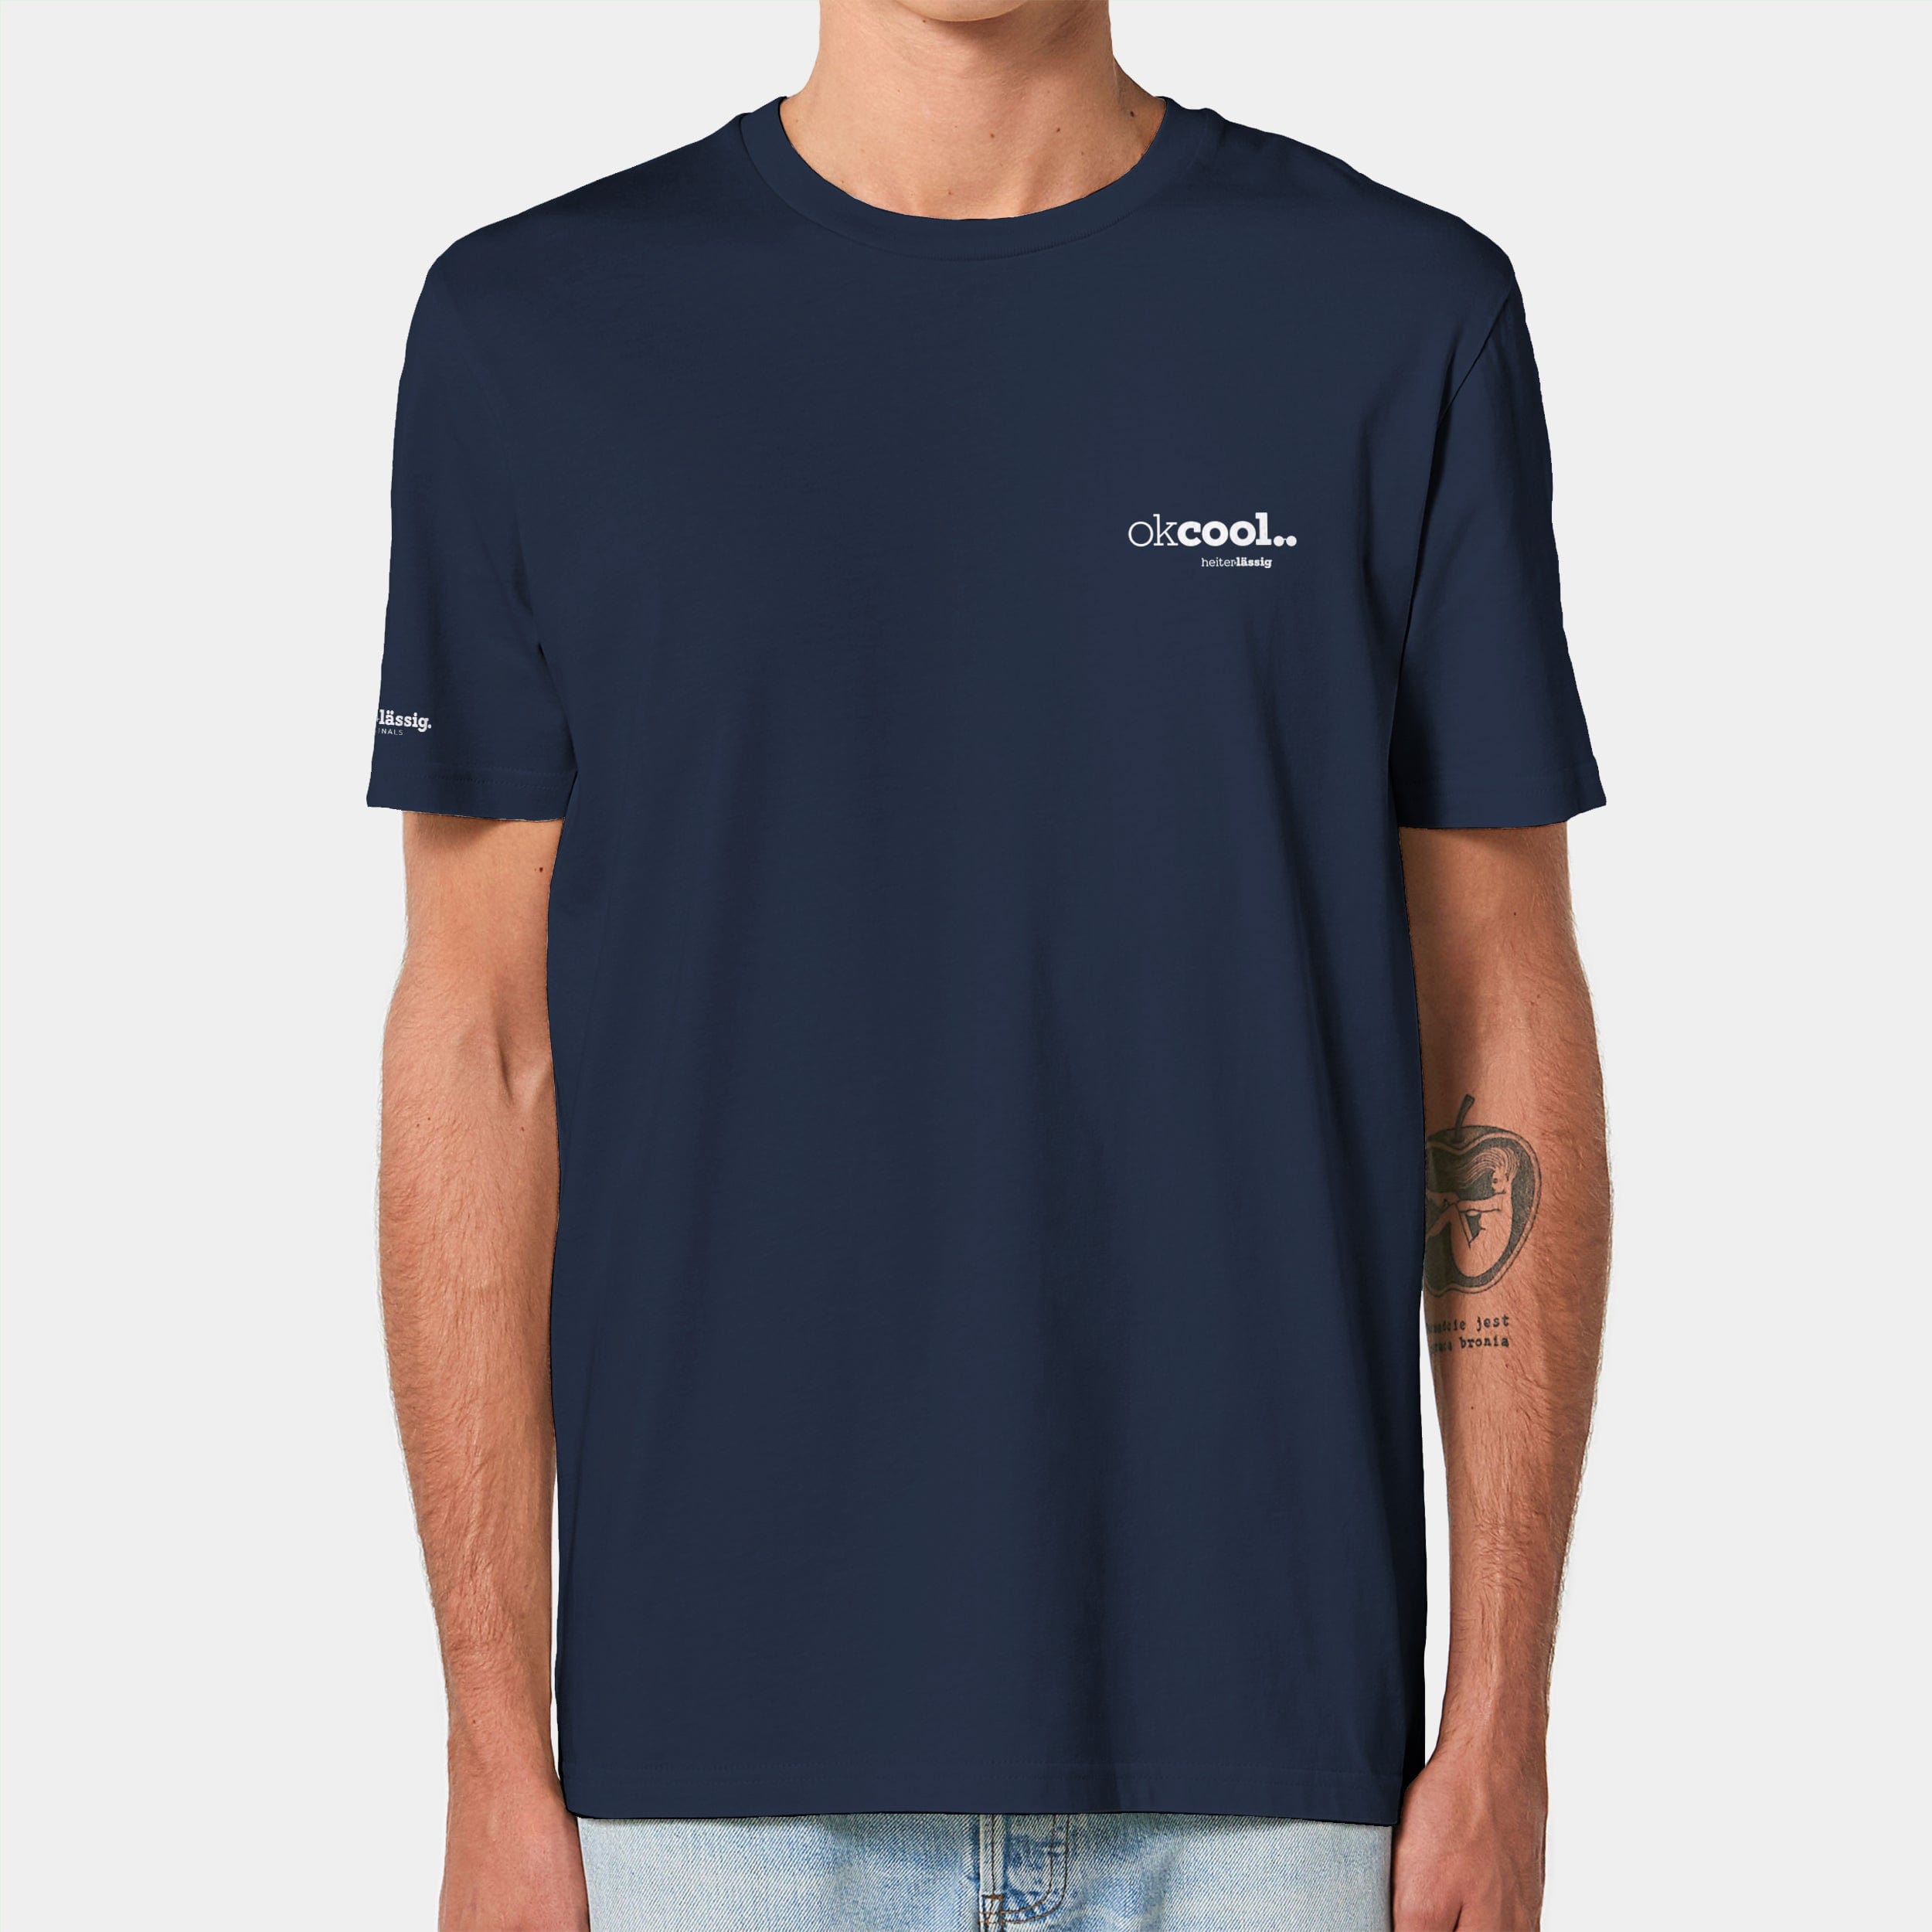 HEITER & LÄSSIG T-Shirt ORIGINAL "okcool" XXS / french navy - aus nachhaltiger und fairer Produktion